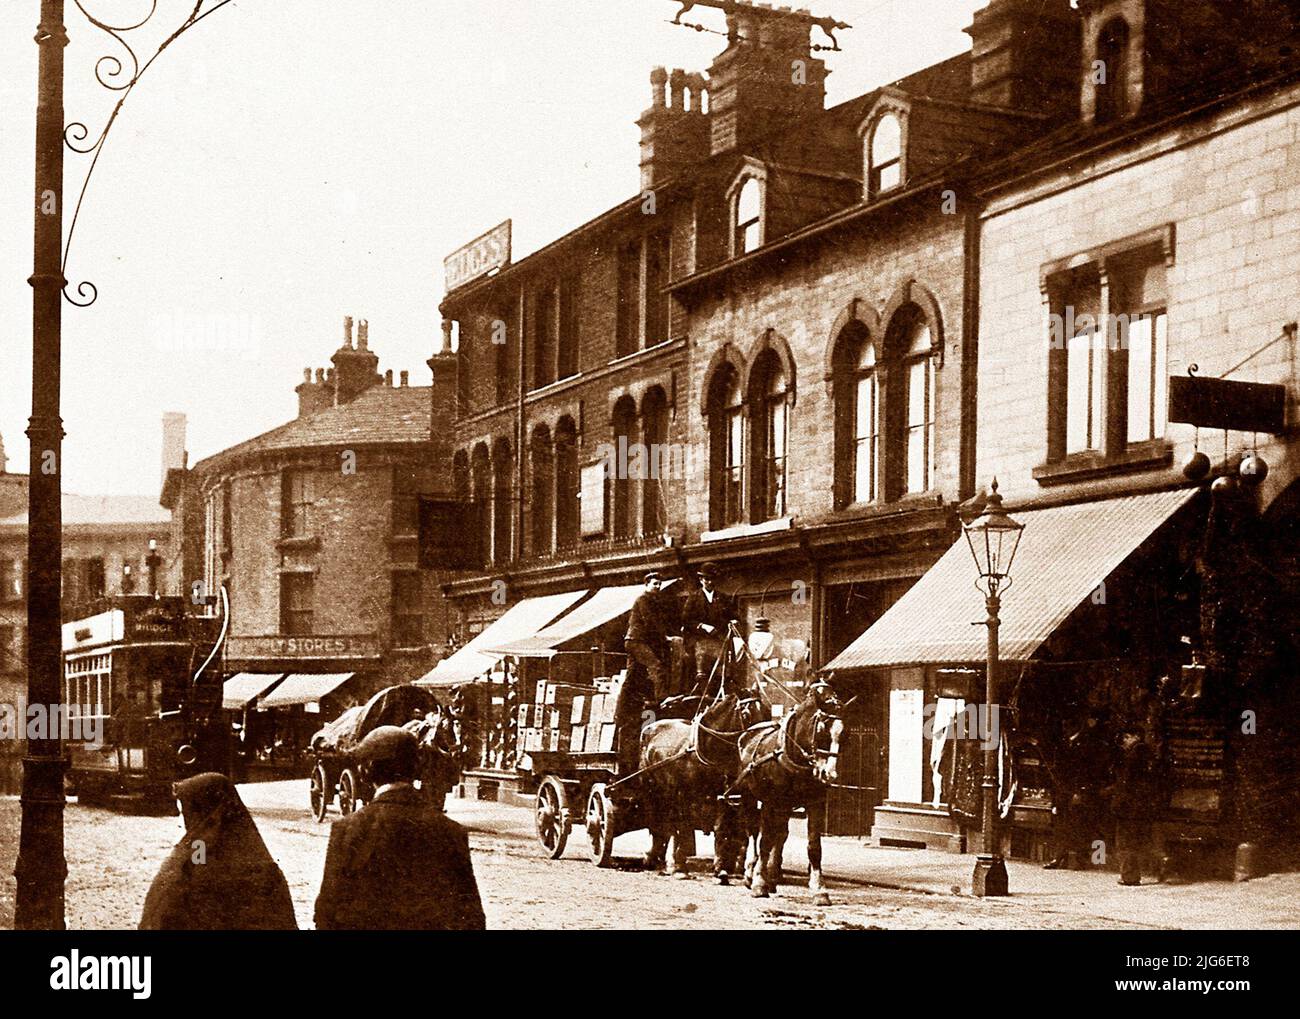 Wharfe Street, puente Sowerby, principios de 1900s Foto de stock